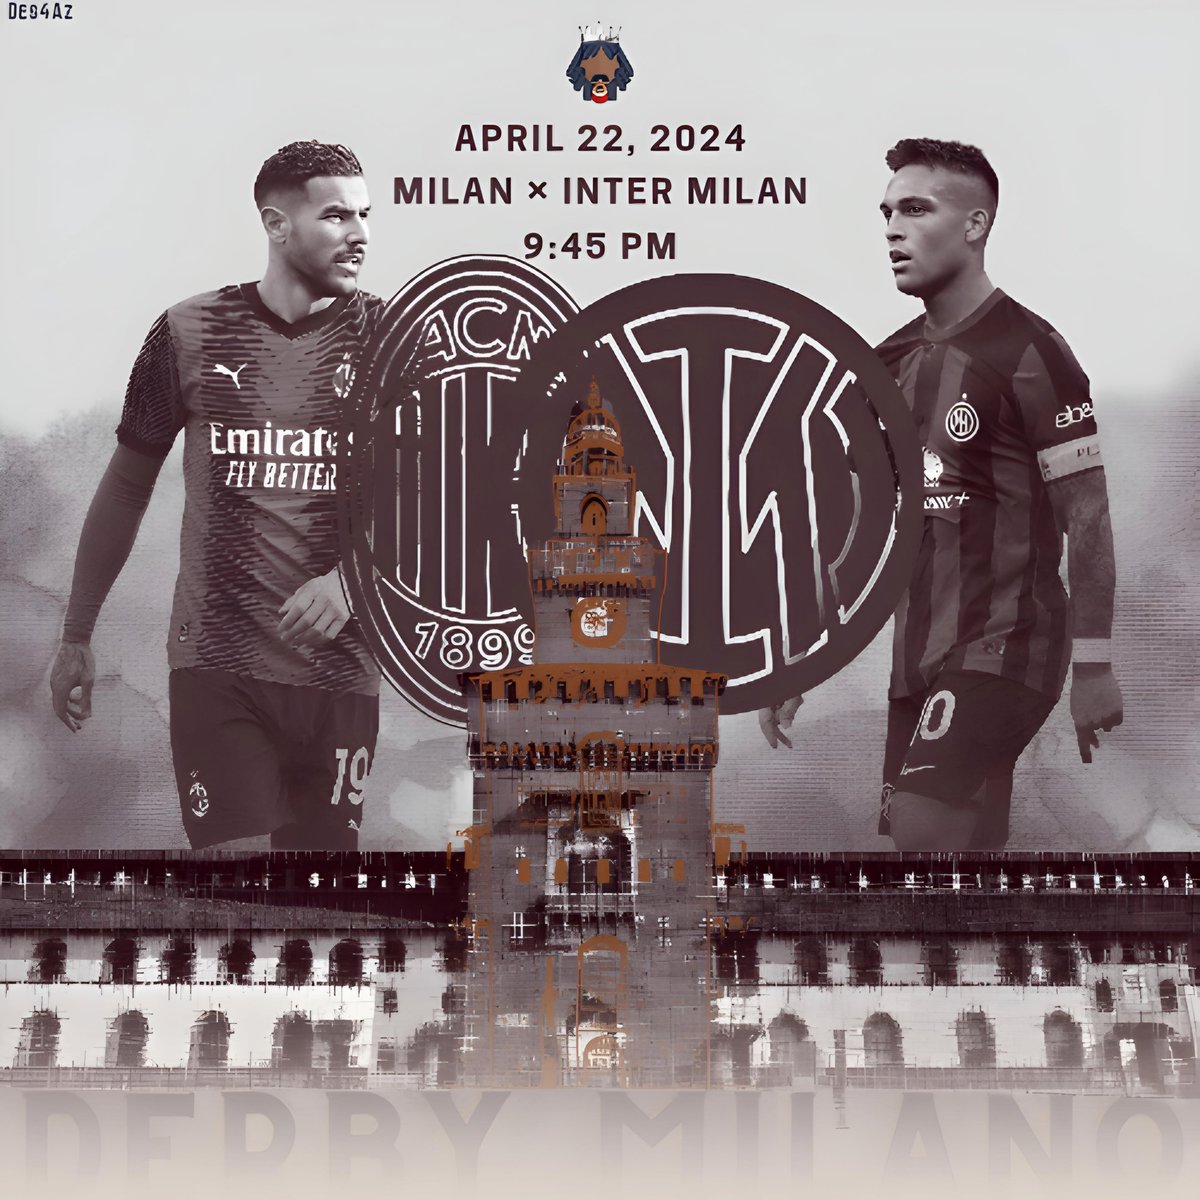 #Milan × #Inter milan
#SerieATIM
9:45Pm
San Siro
22 April 2024